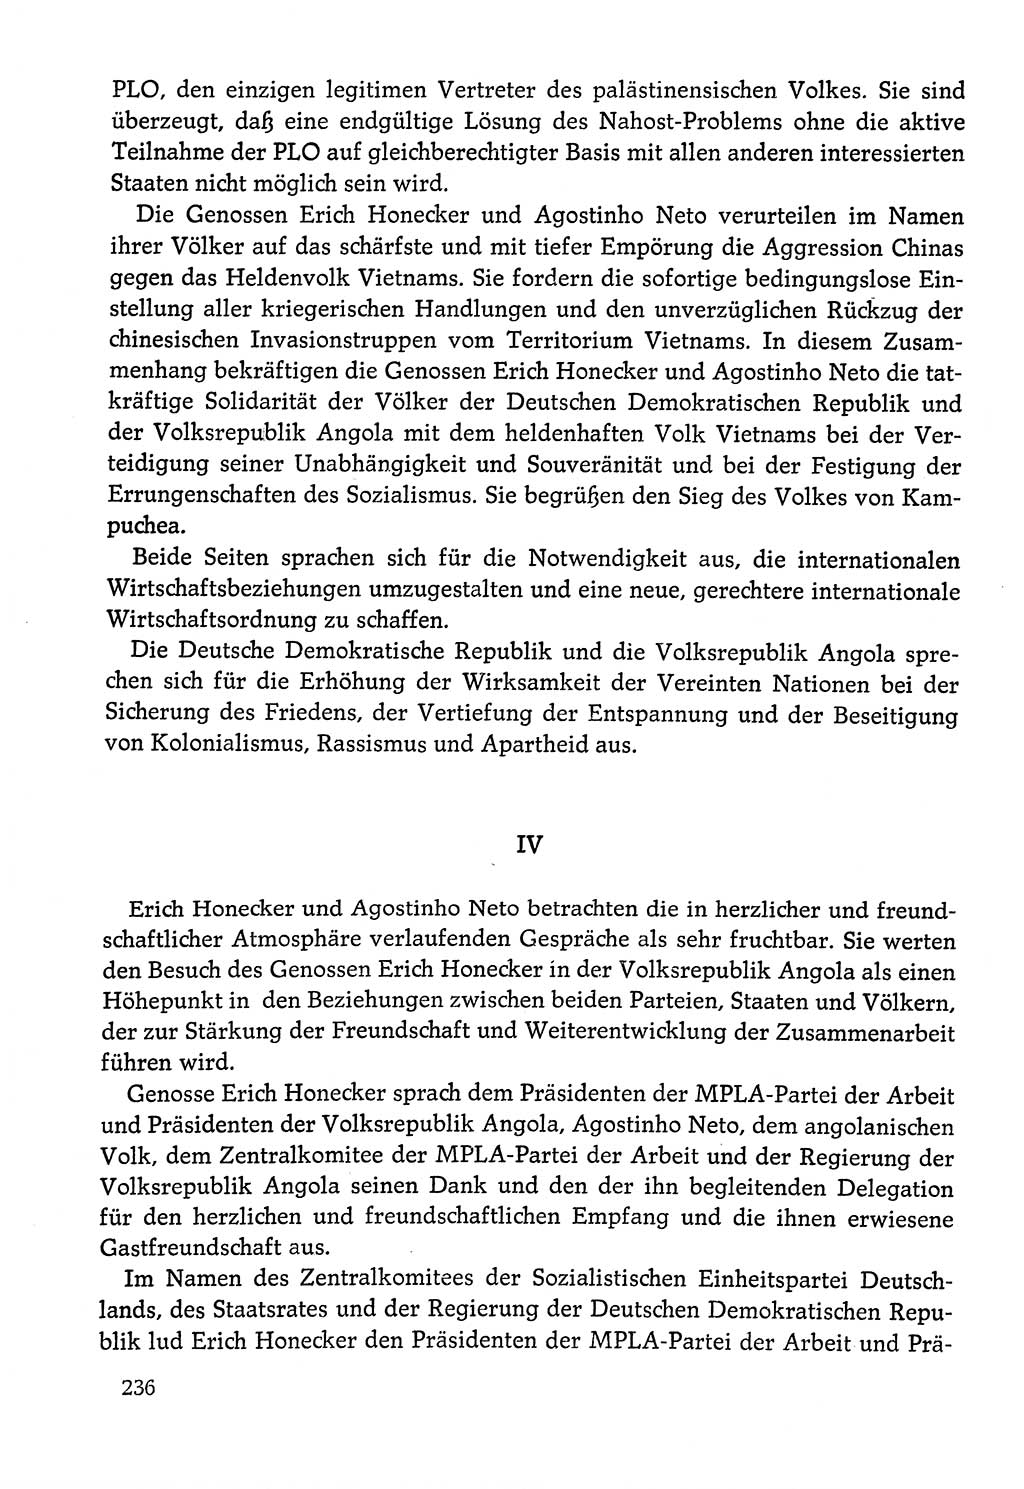 Dokumente der Sozialistischen Einheitspartei Deutschlands (SED) [Deutsche Demokratische Republik (DDR)] 1978-1979, Seite 236 (Dok. SED DDR 1978-1979, S. 236)